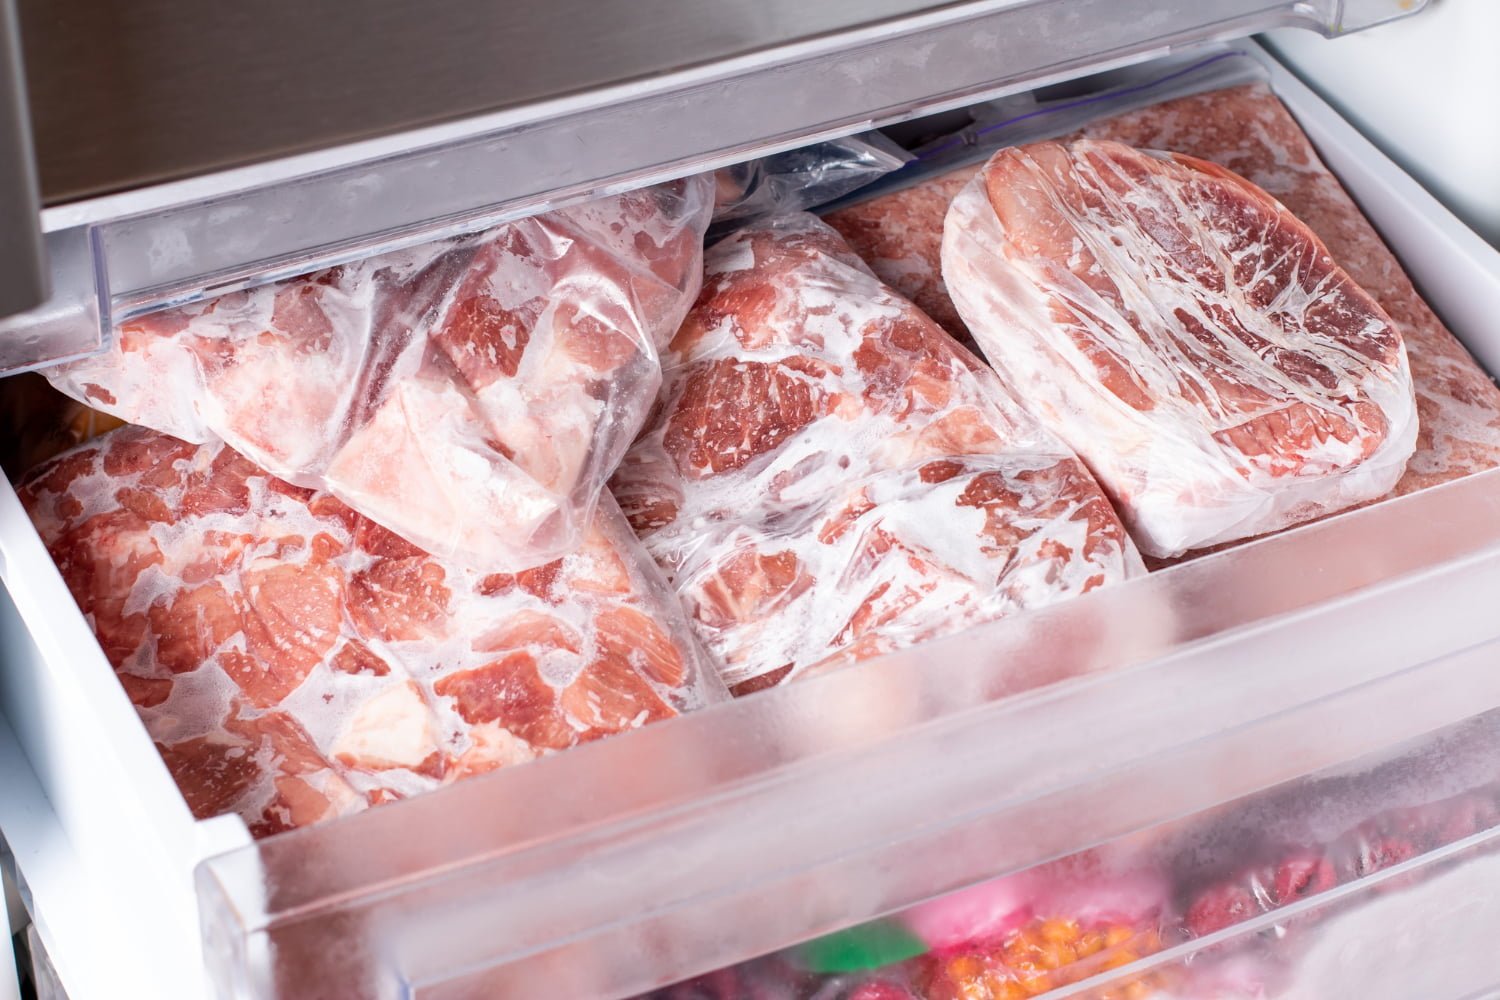 carnes en el congelador / carne